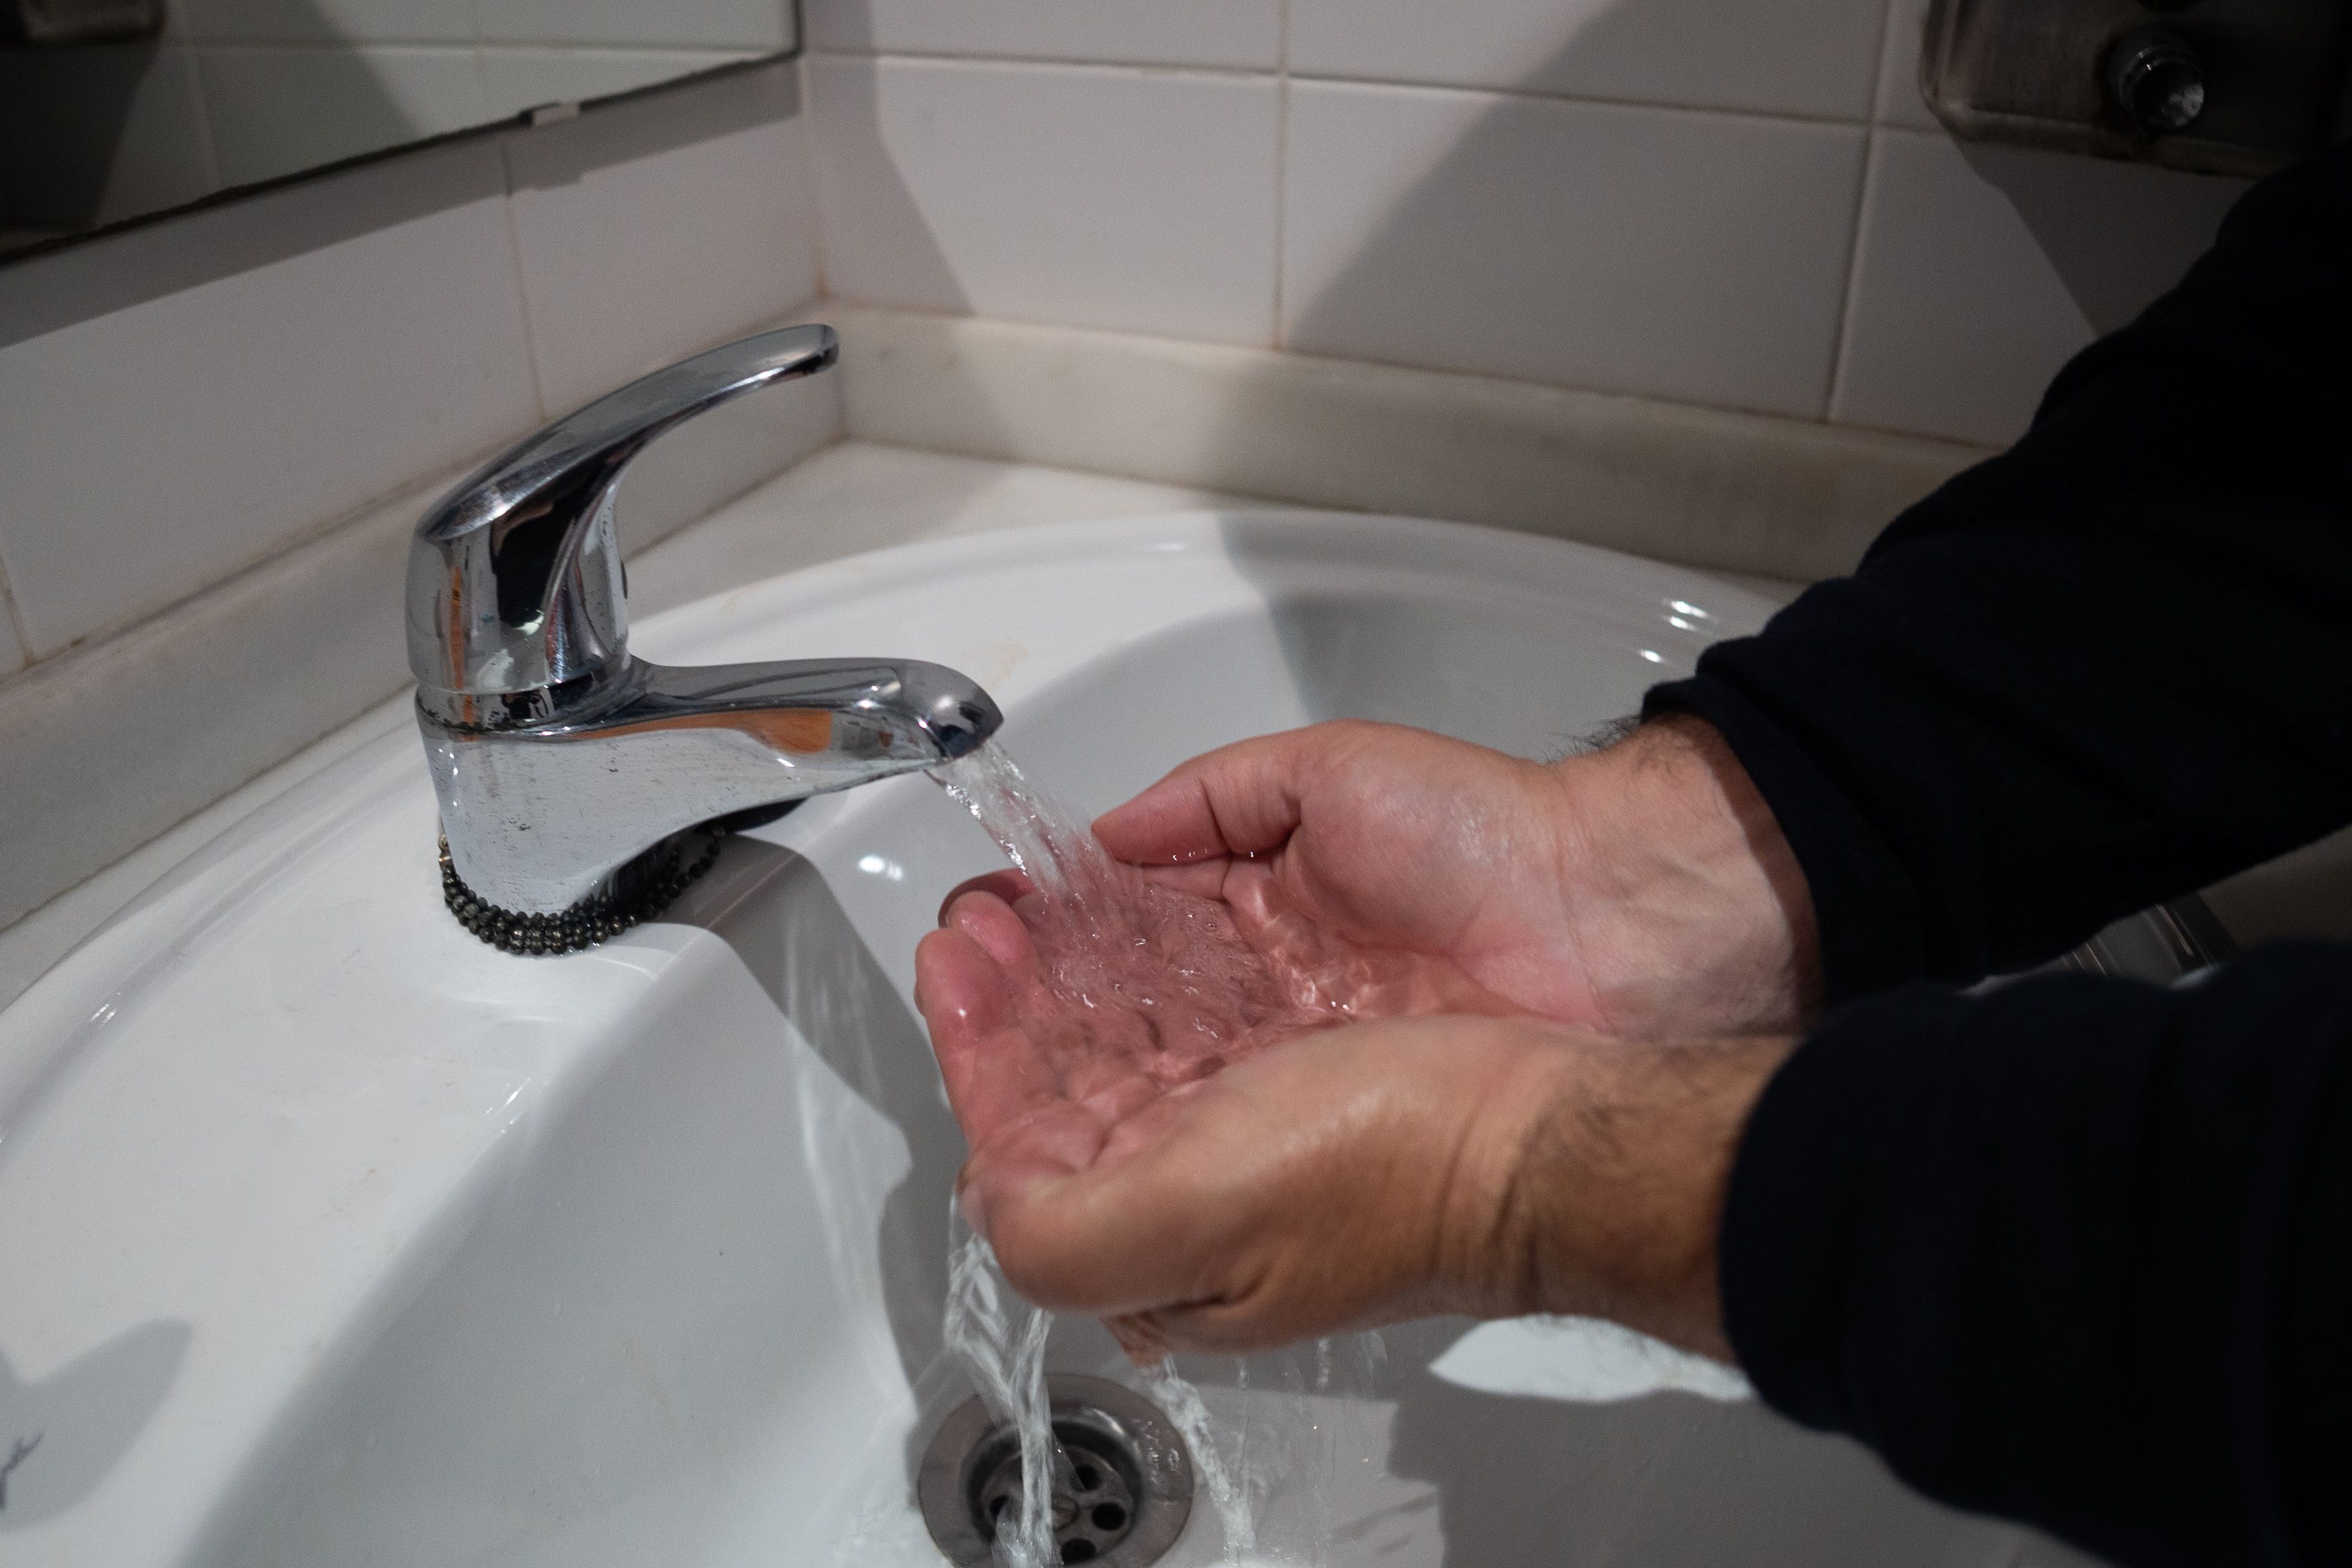 Agua escasa. Una persona se lava las manos.